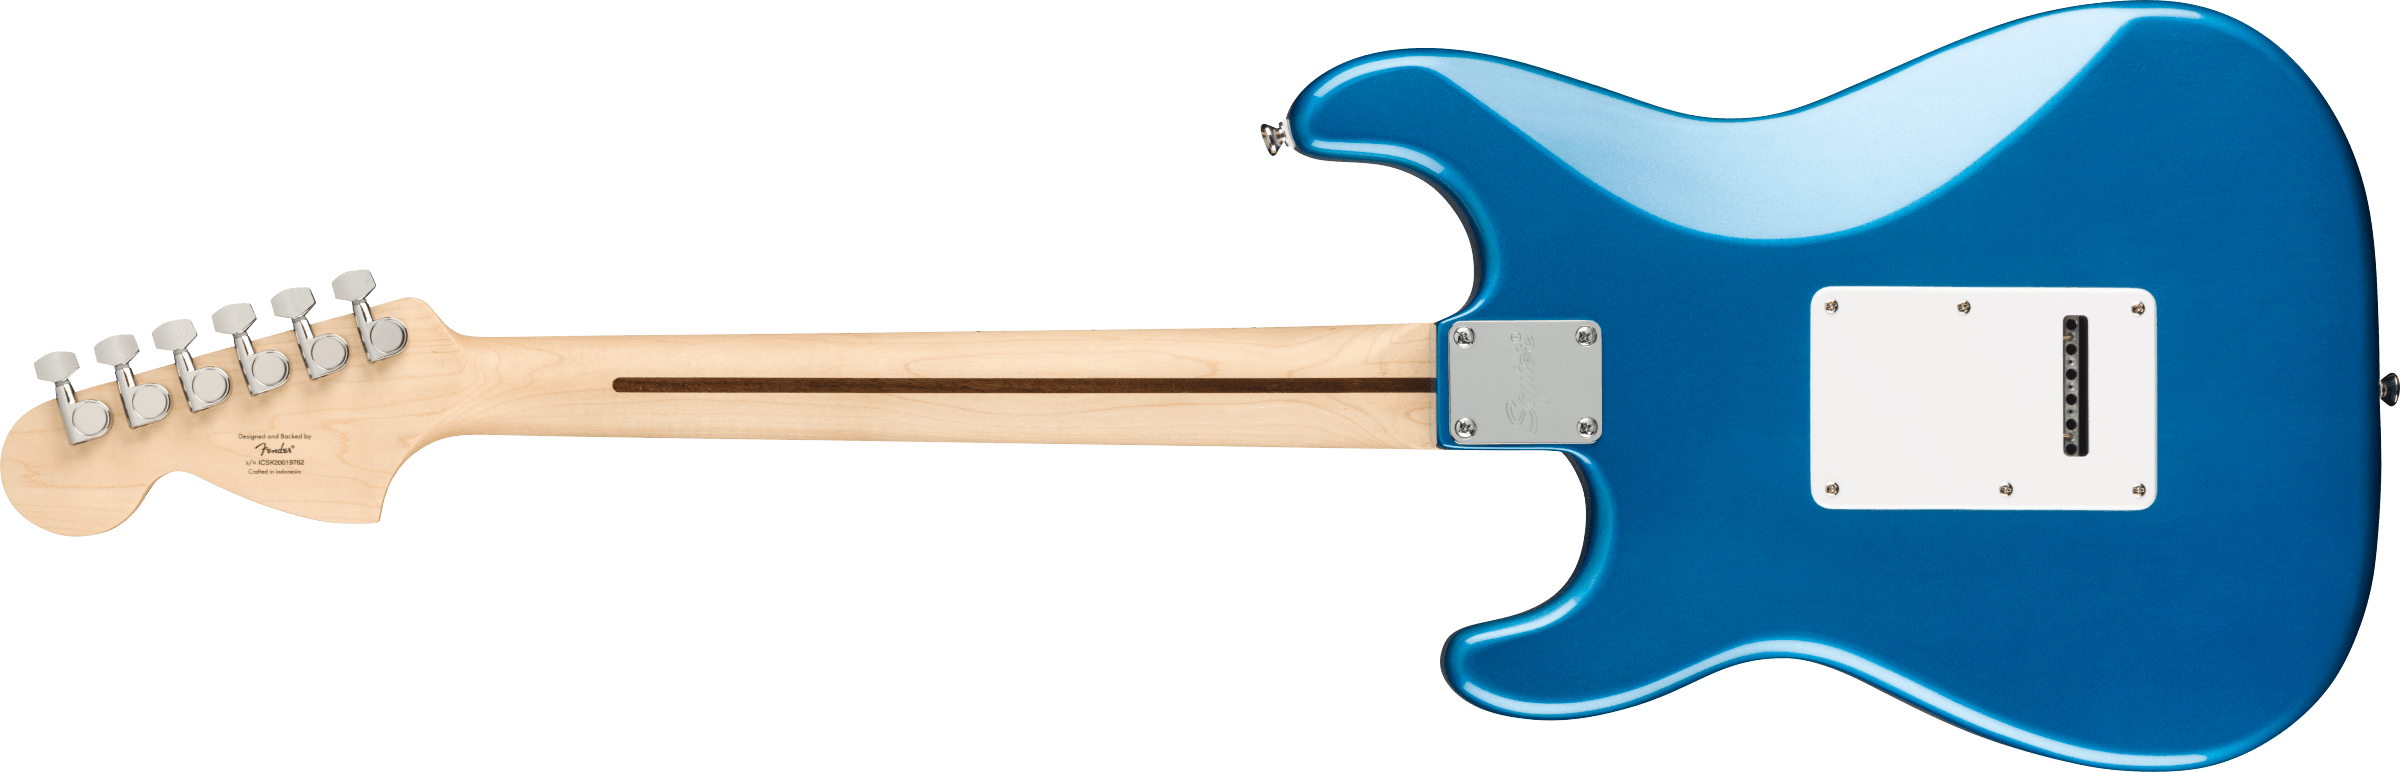 Squier Strat Affinity Hss Pack +fender Frontman 15g 2021 Trem Mn - Lake Placid Blue - Electric guitar set - Variation 2